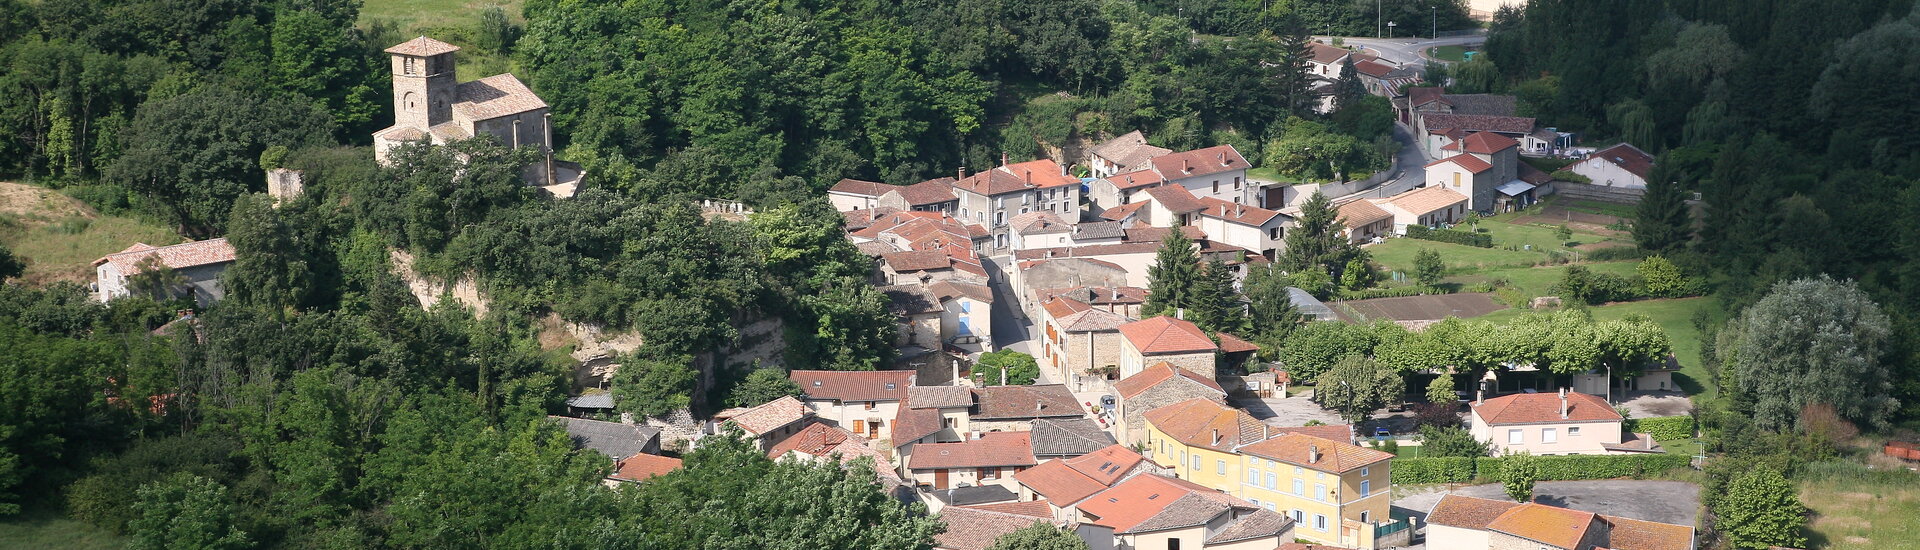 Galerie photos de la commune de Chantemerle les Blés dans le Drôme